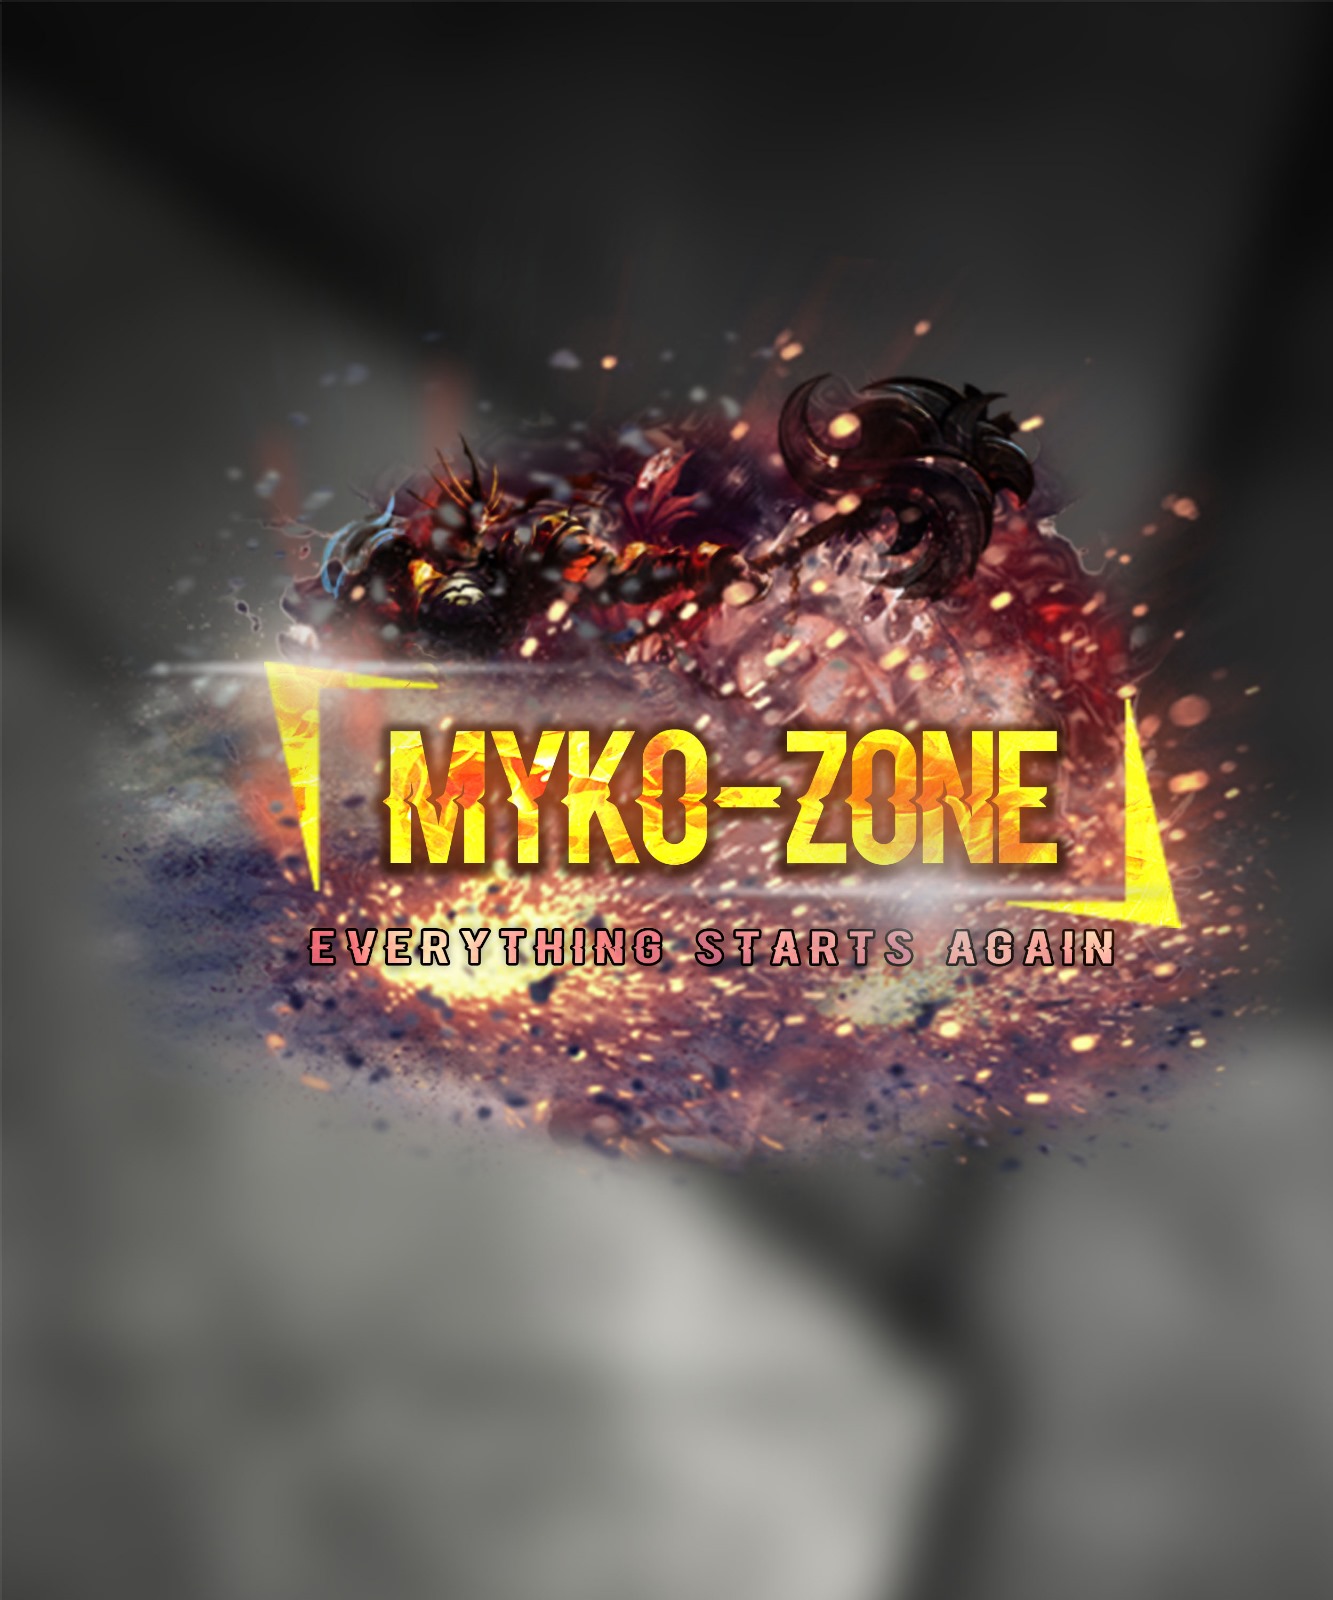 Myko-Zone